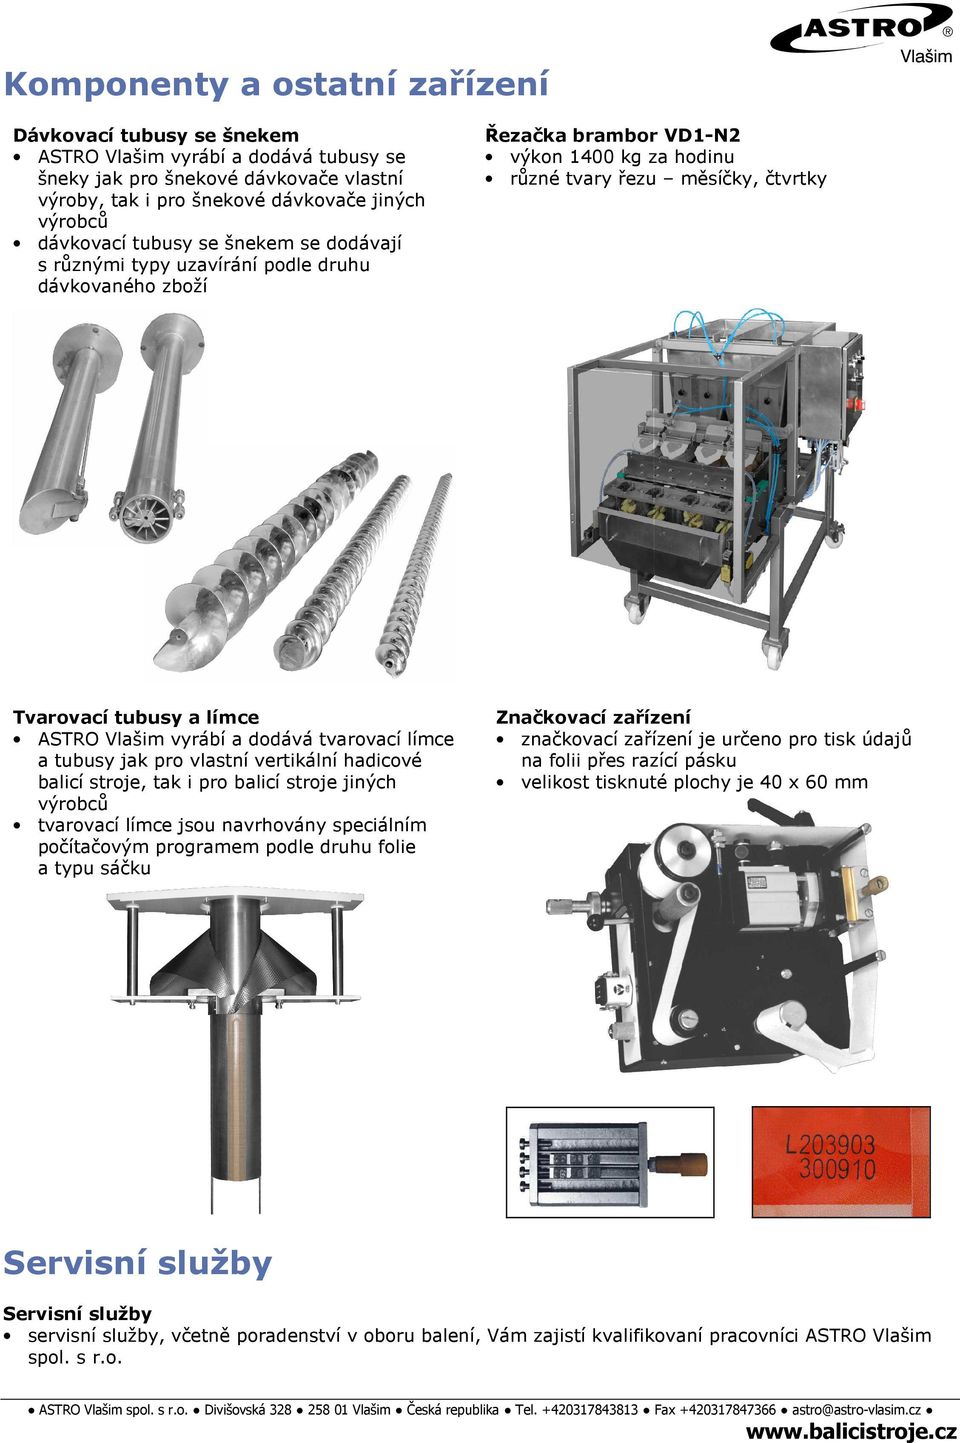 balicí stroje, tak i pro balicí stroje jiných výrobců tvarovací límce jsou navrhovány speciálním počítačovým programem podle druhu folie a typu sáčku Řezačka brambor VD1-N2 výkon 1400 kg za hodinu